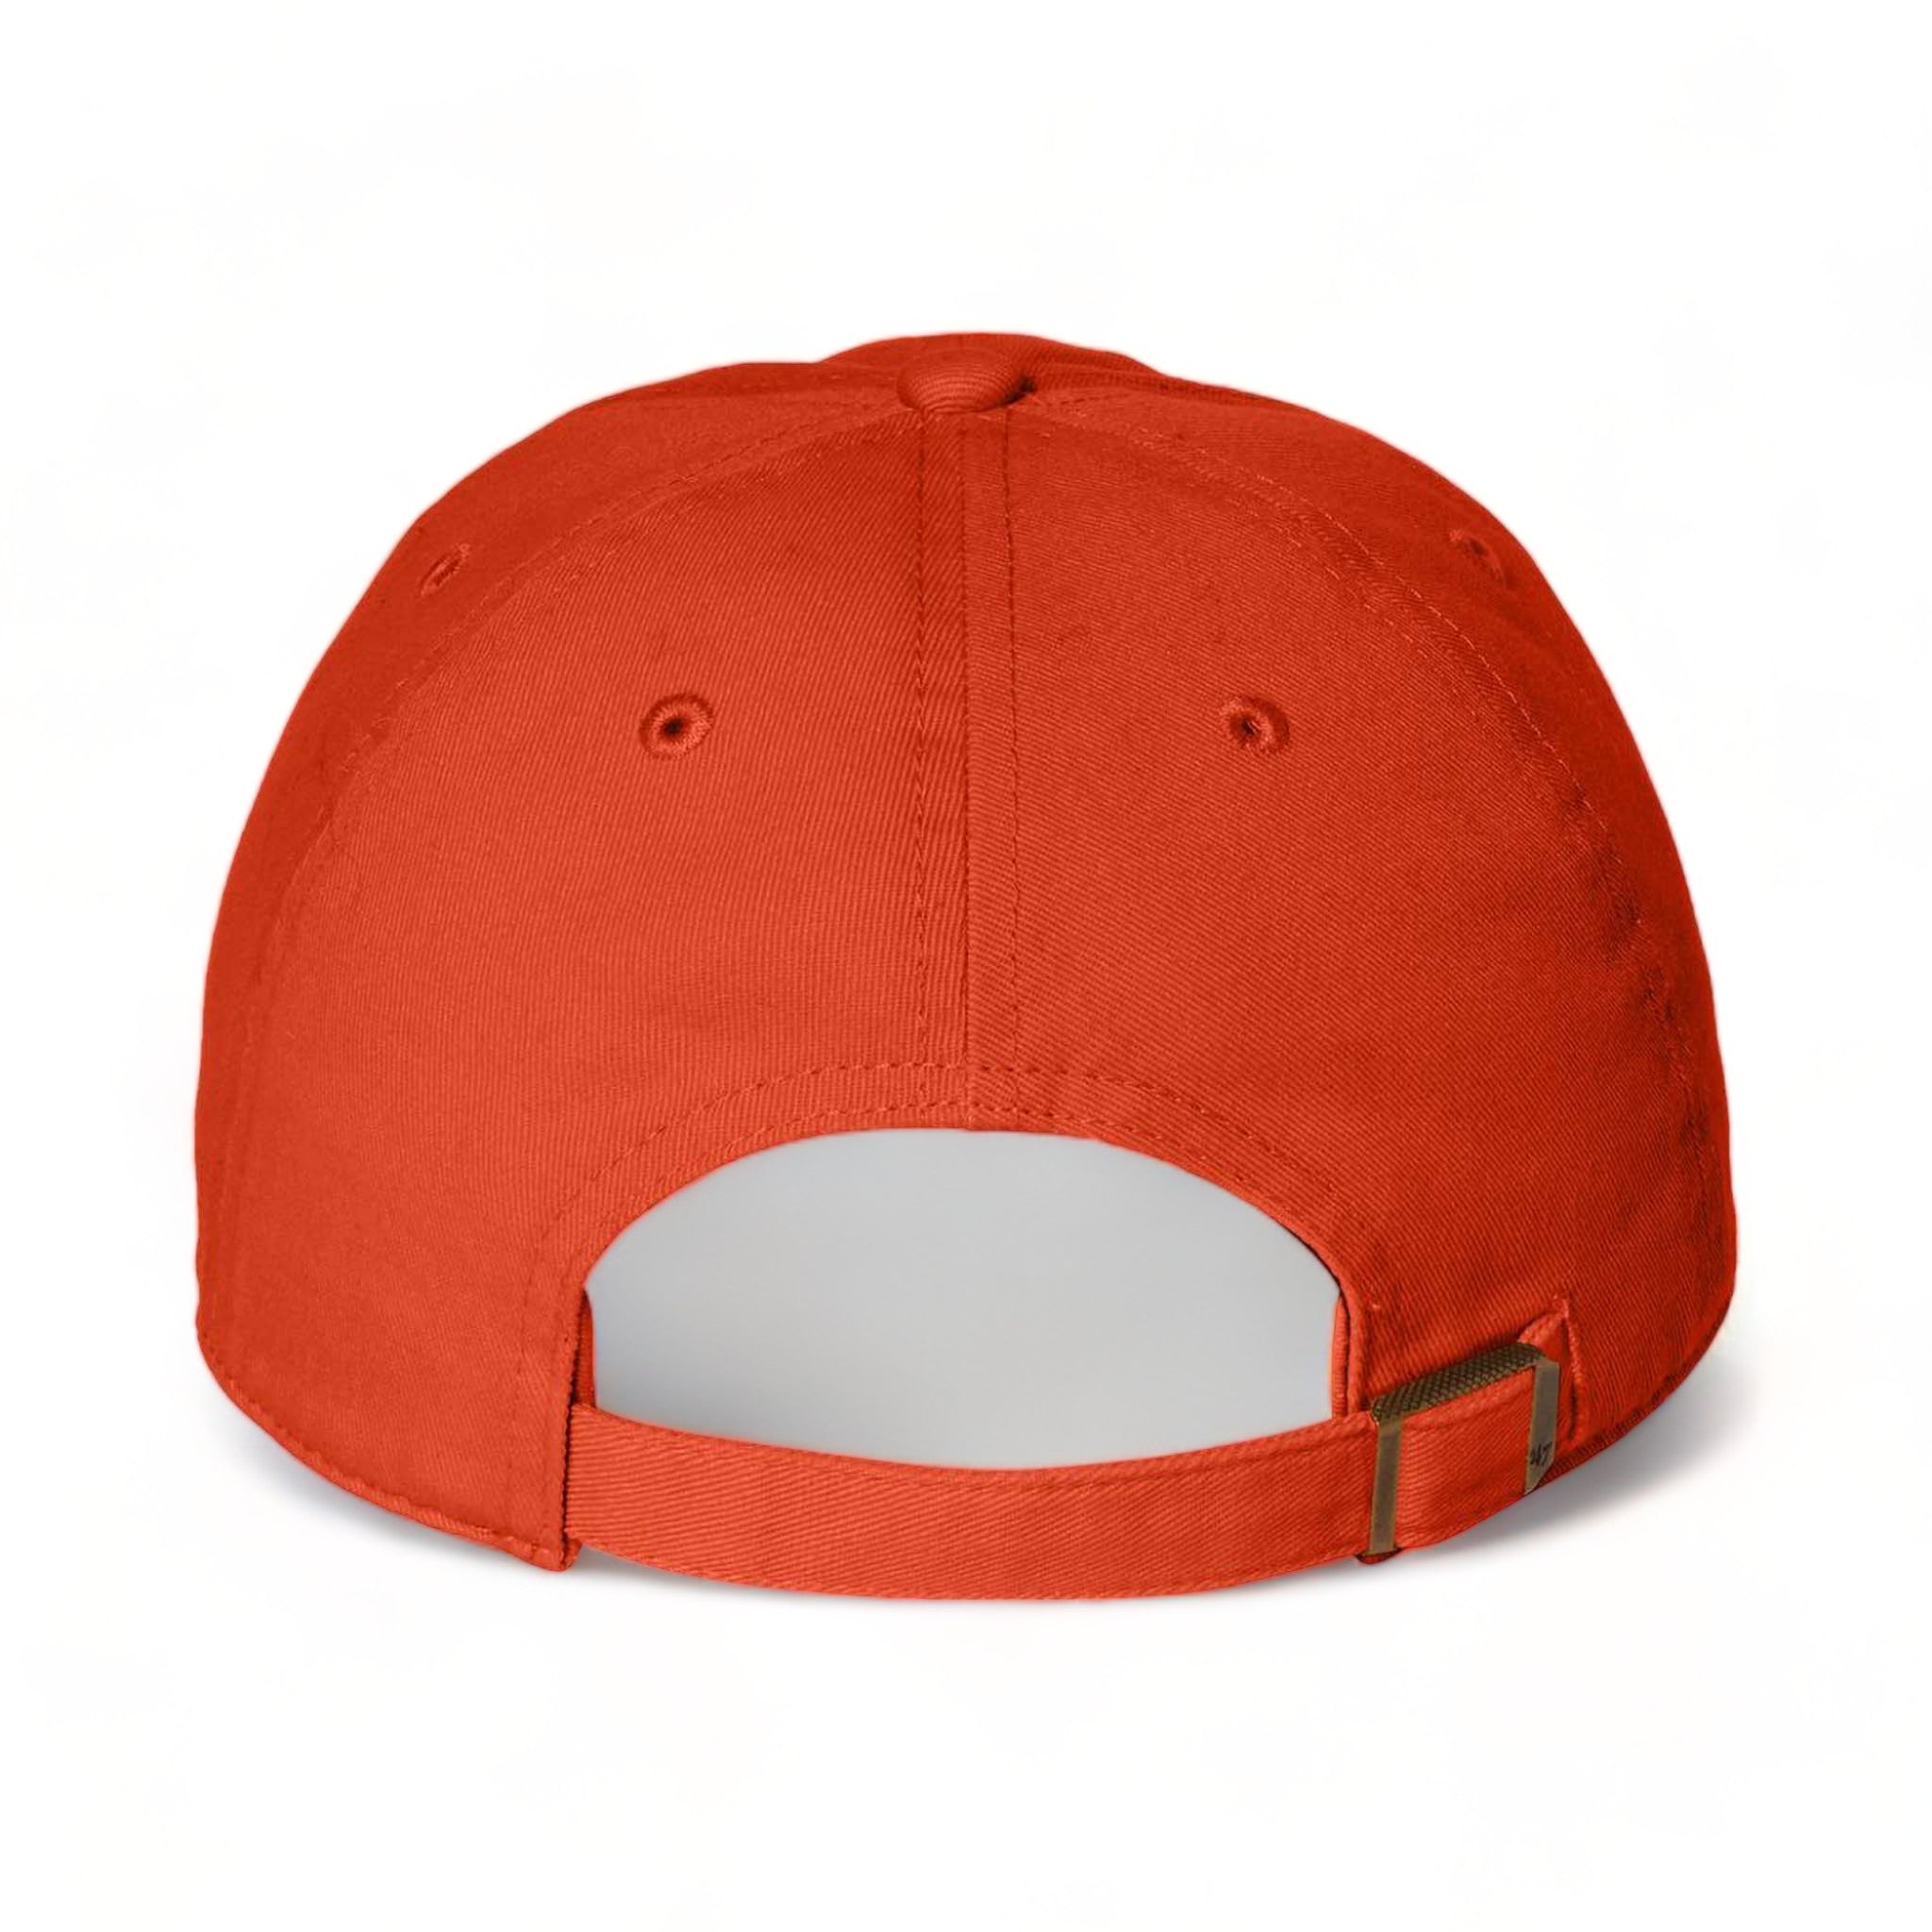 Back view of 47 Brand 4700 custom hat in orange